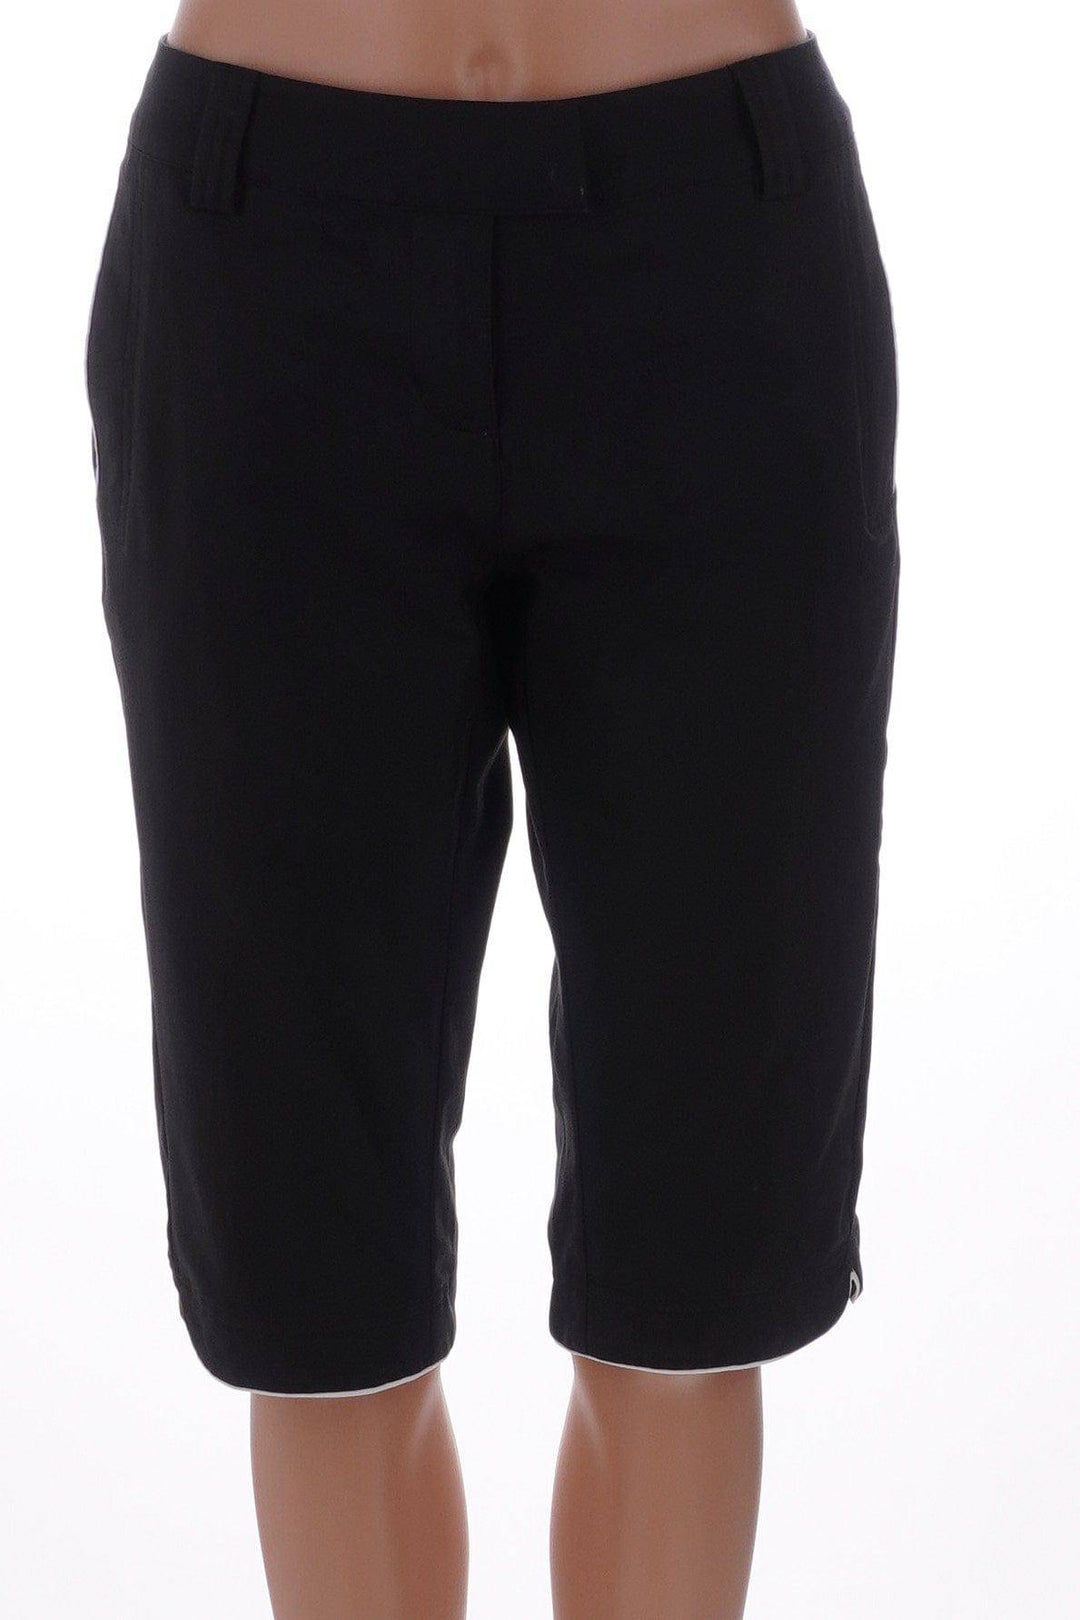 Adidas Black / 4 / Consigned Adidas Climalite Black Size 4 Golf Shorts Size 4